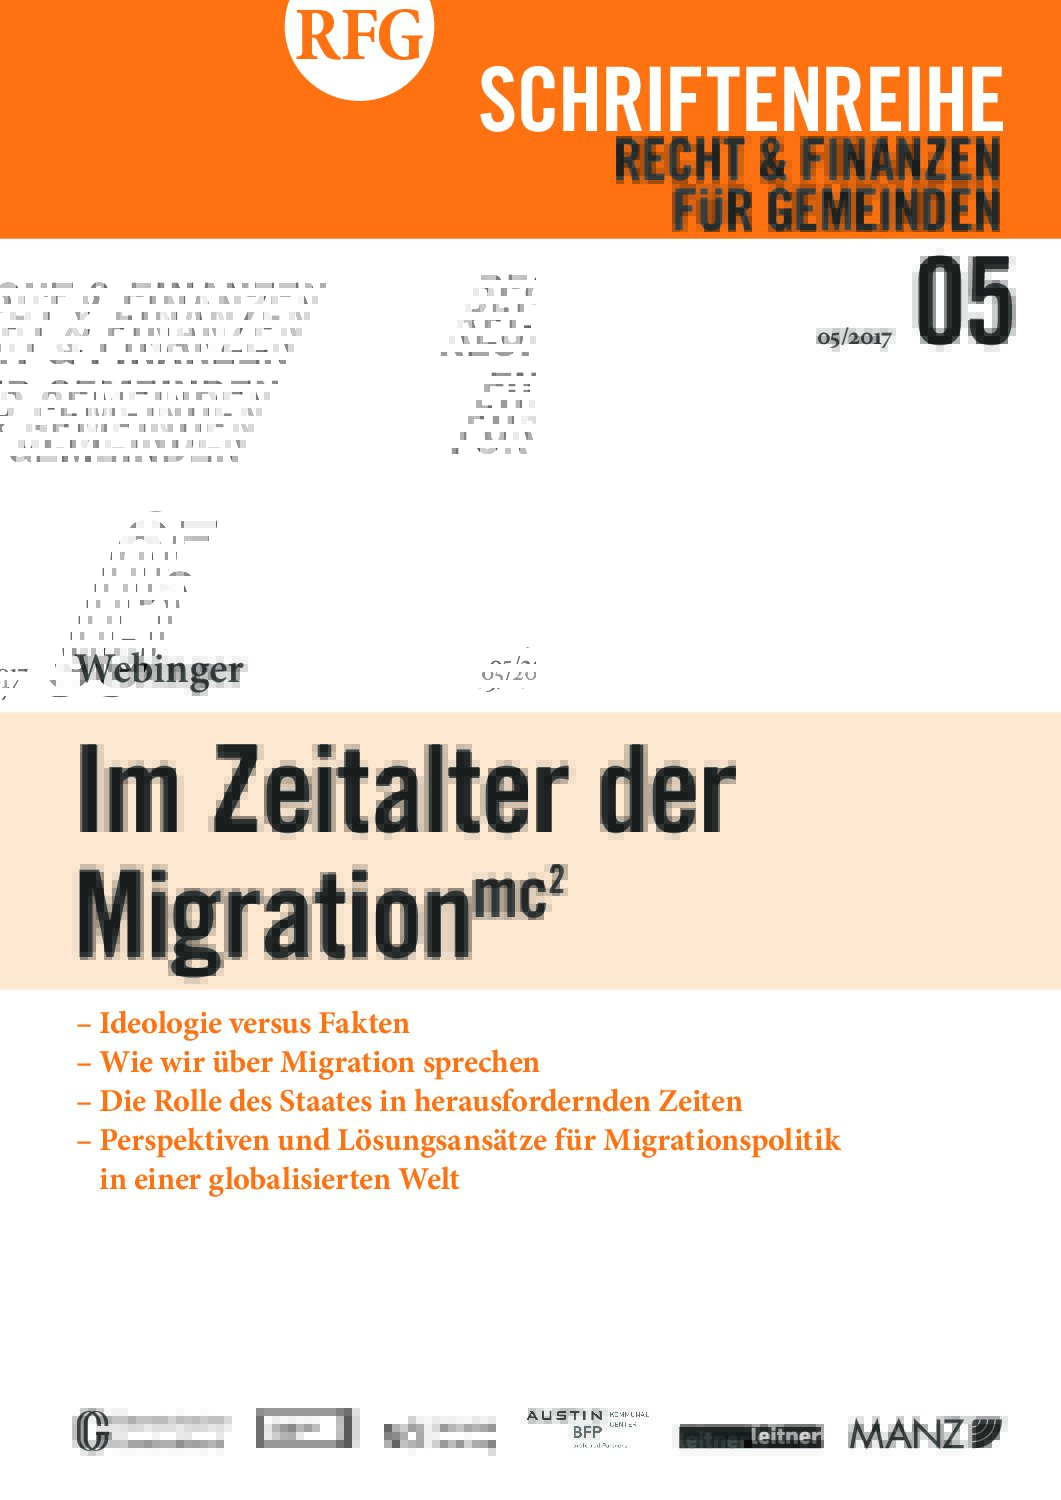 RFG- Schriftenreihe zum Thema Migration